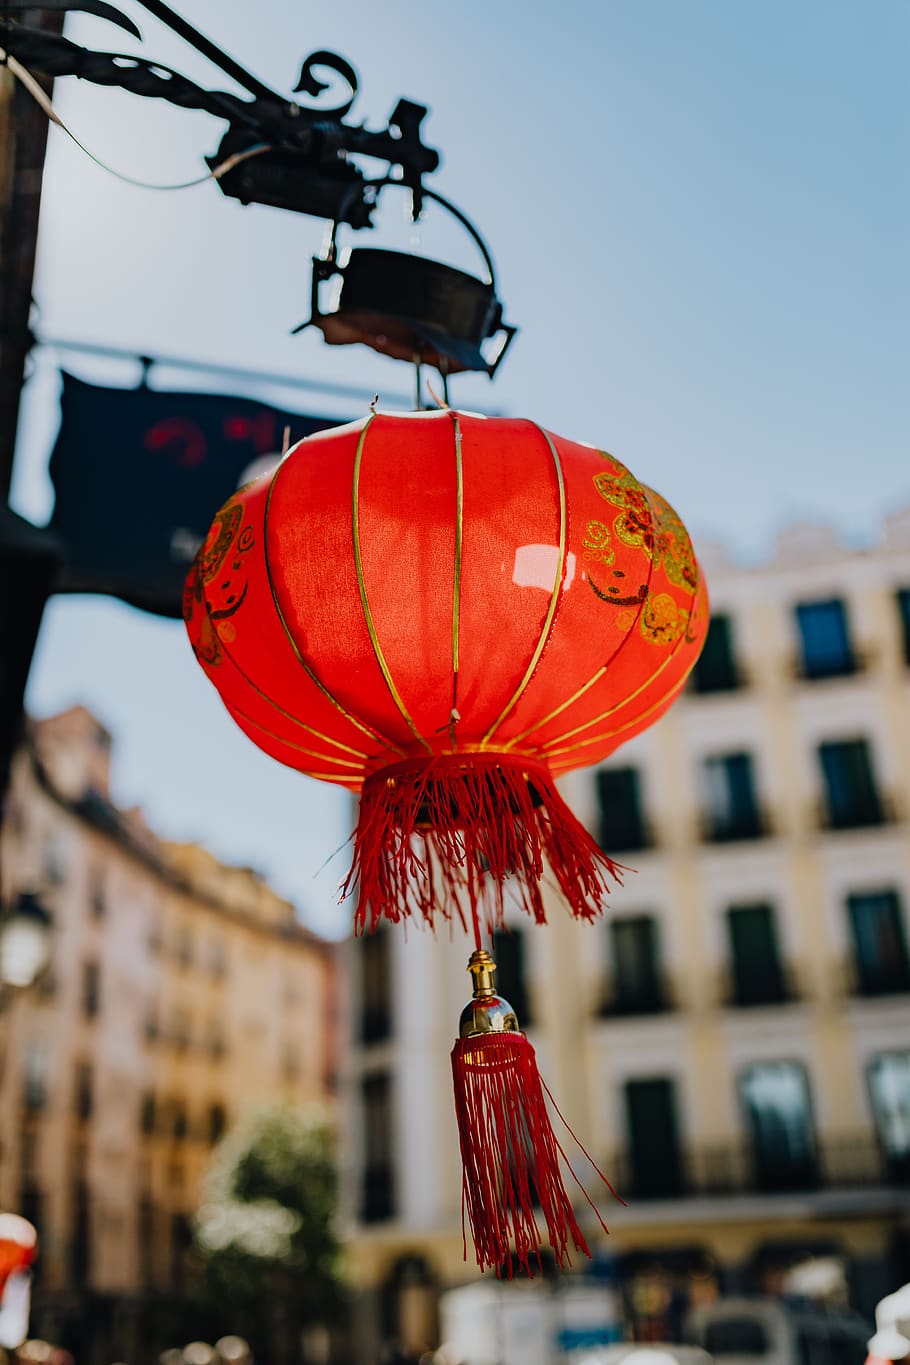 Cina, lampu, asia, lentera, tradisional, Merah, Madrid, Spanyol, eksterior bangunan, peralatan penerangan